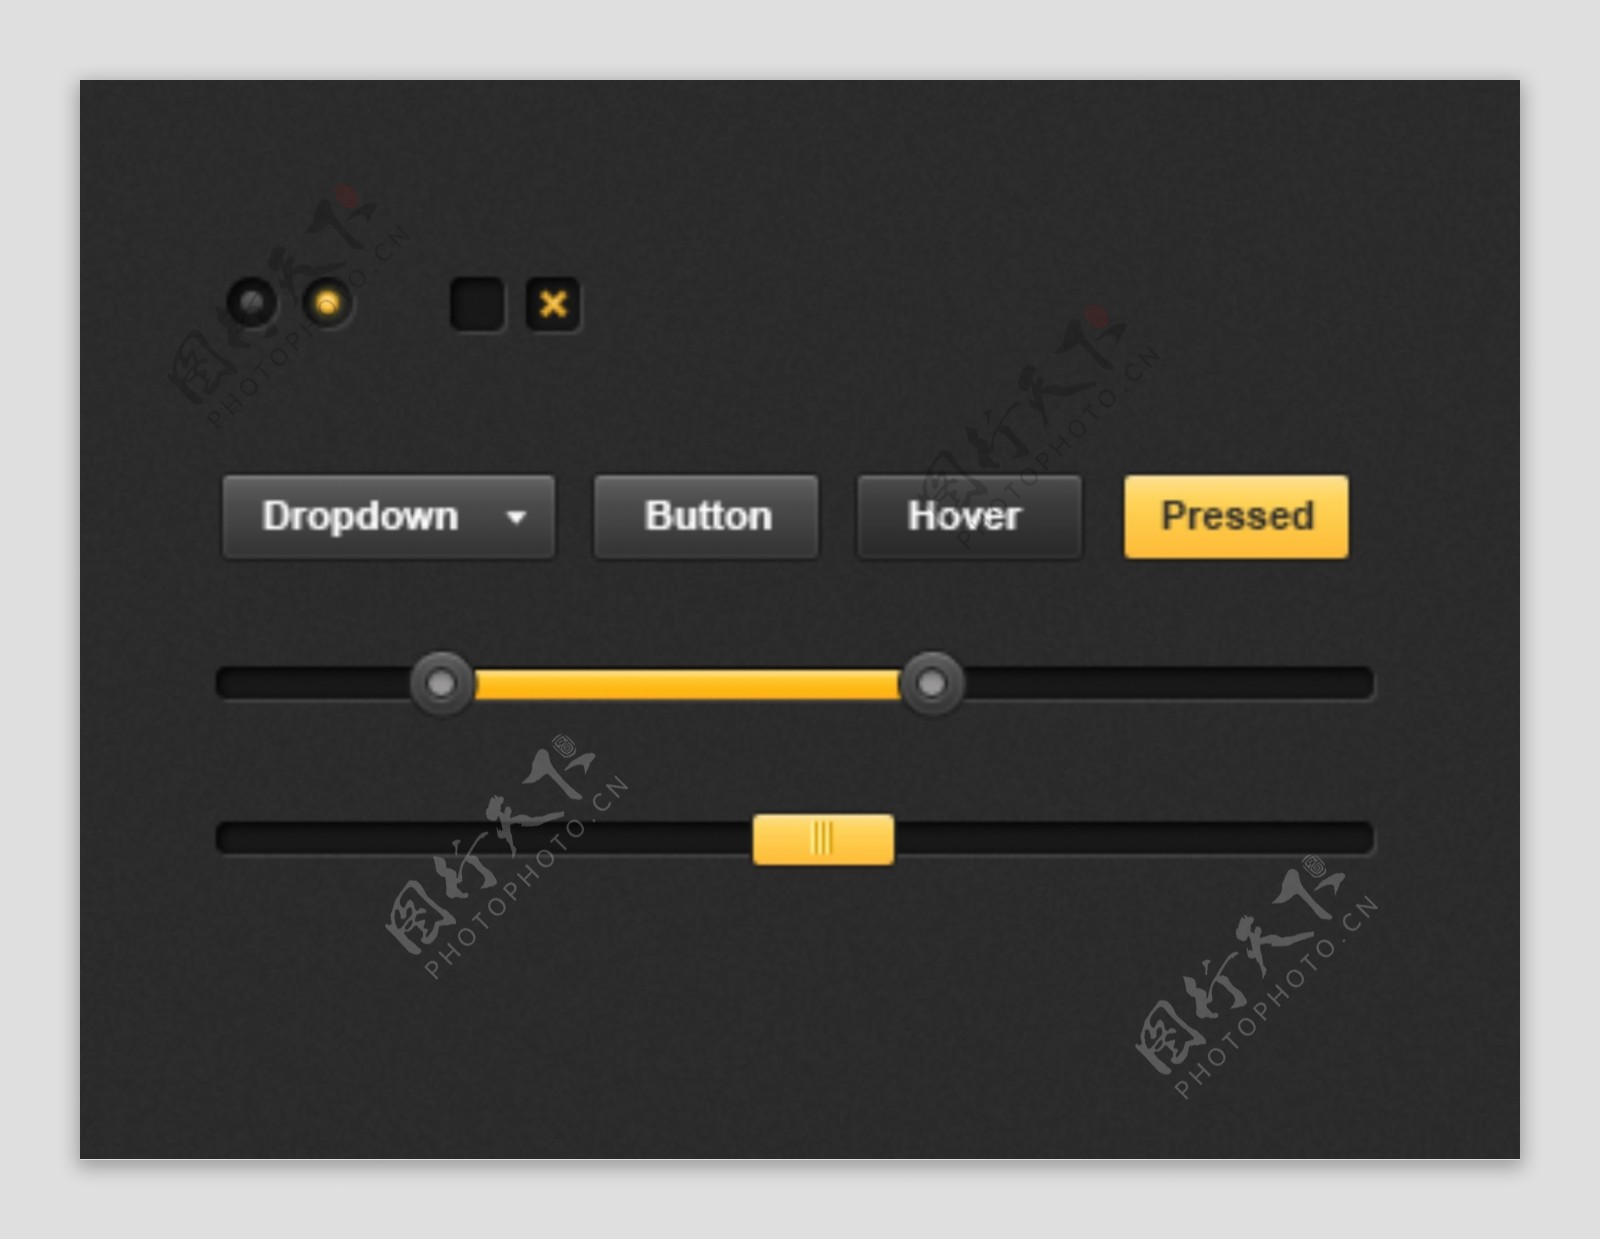 黑色系列复选框进度条滑块按钮设计